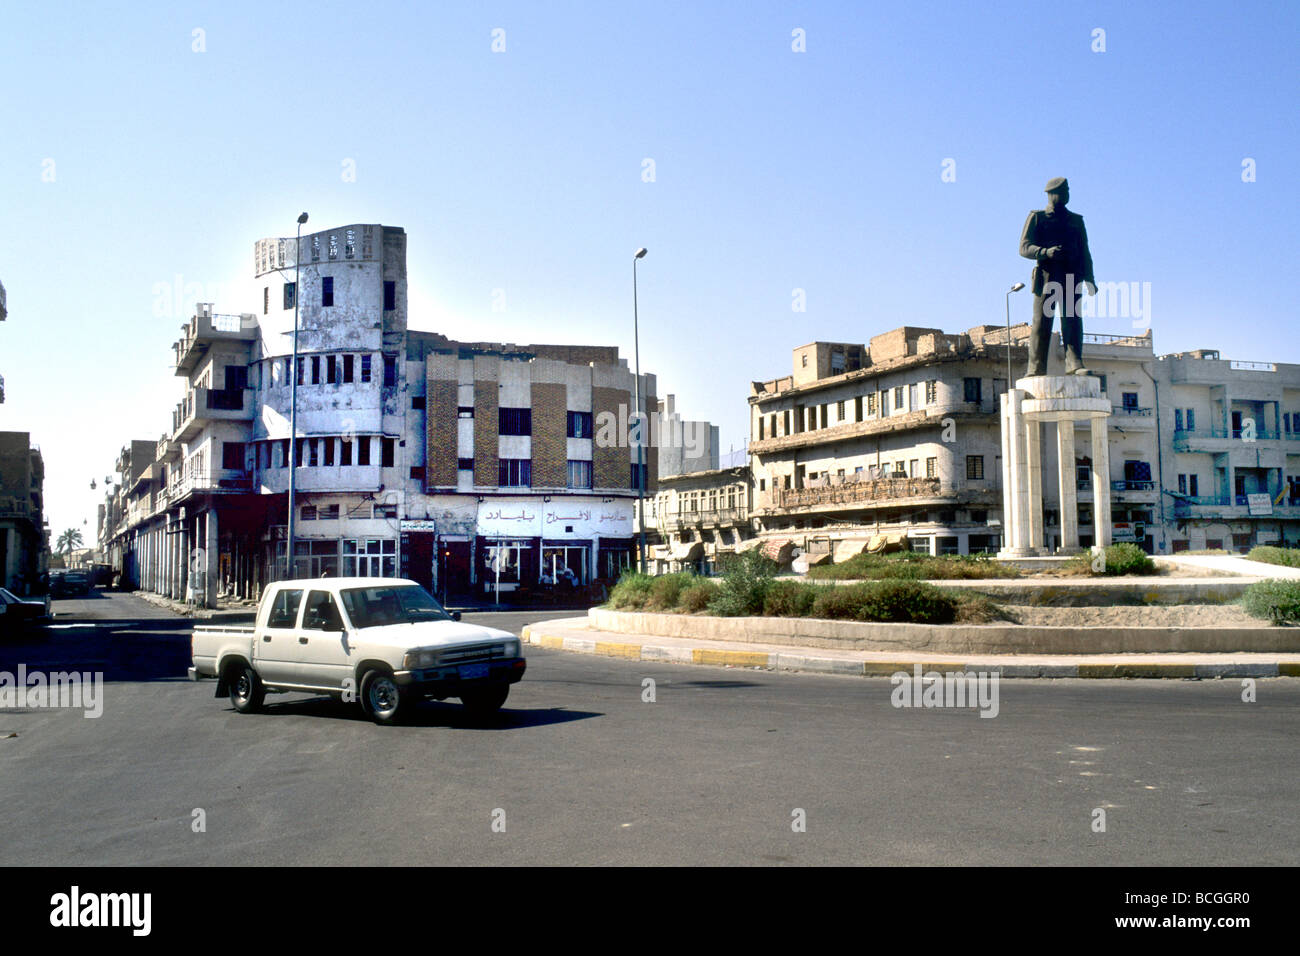 L'Iraq de Saddam la statue dans une banlieue de Bagdad Banque D'Images